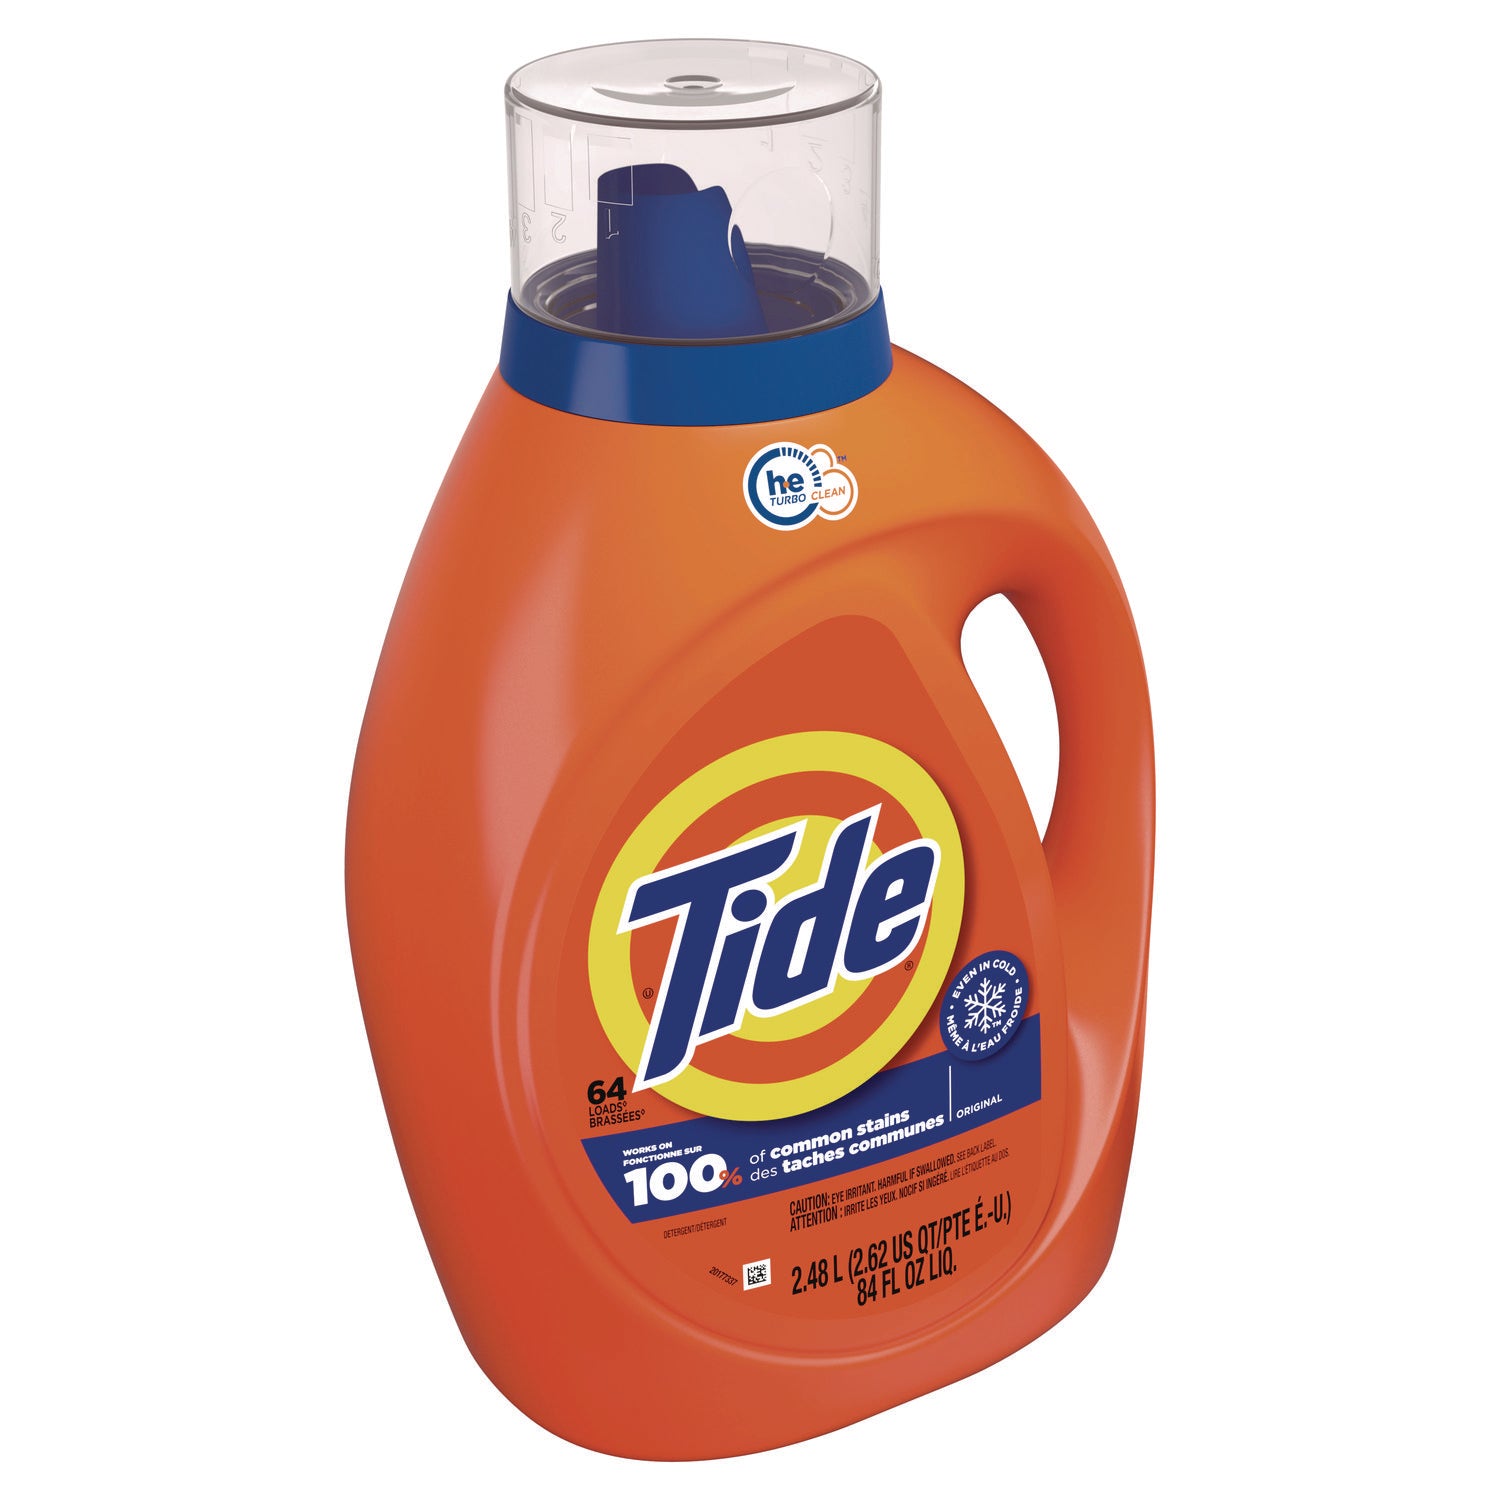 he-laundry-detergent-original-scent-liquid-64-loads-84-oz-bottle-4-carton_pgc12110ct - 2